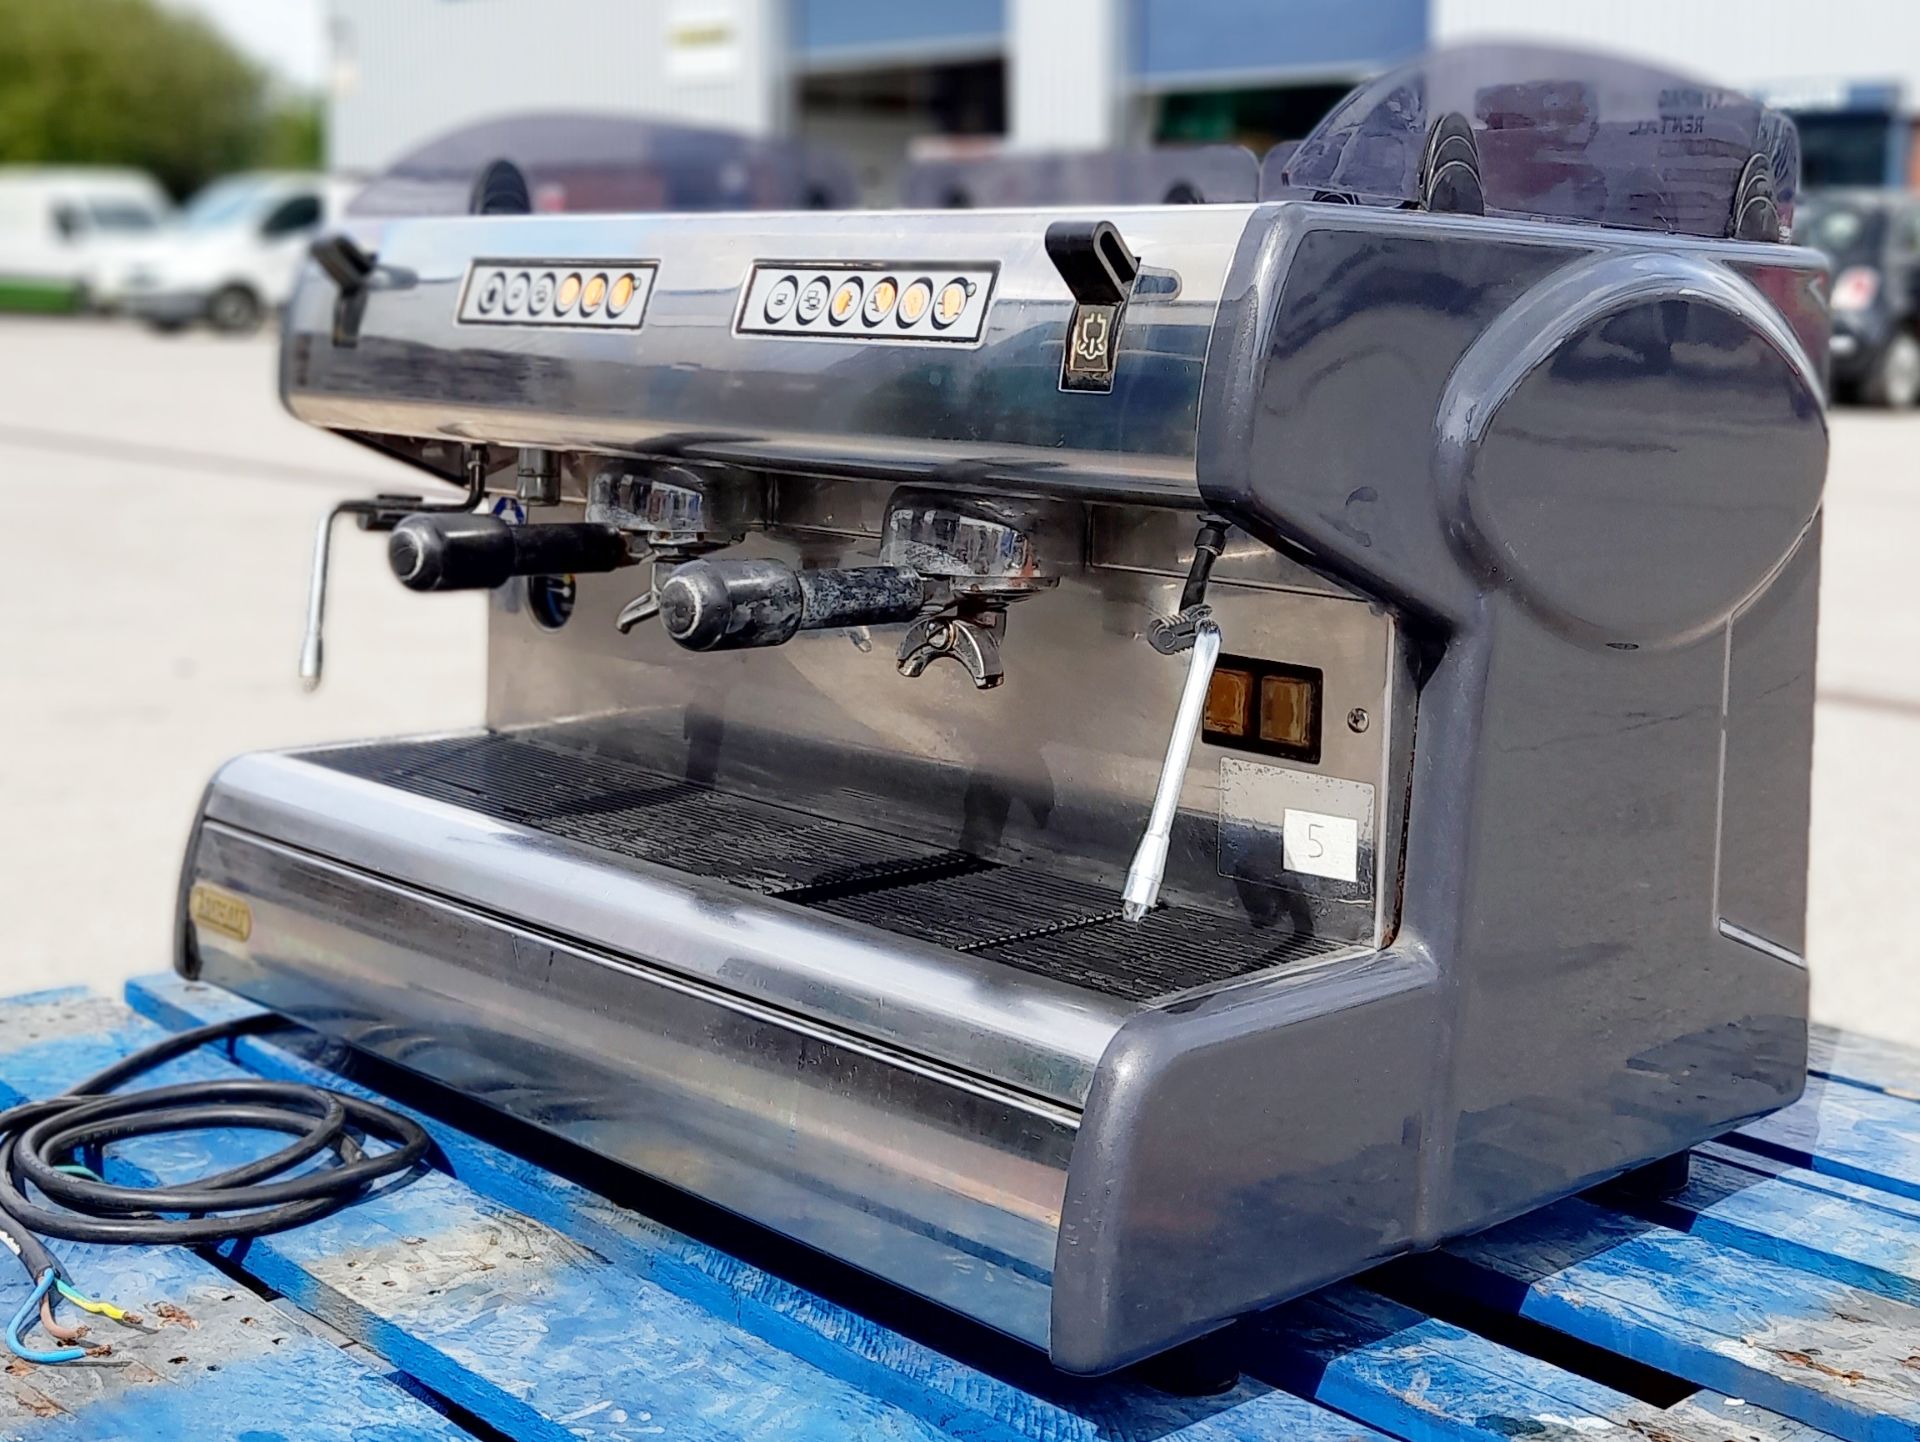 1 x Carimali Commercial Espresso Coffee Machine - CL011 - Location: Altrincham WA14